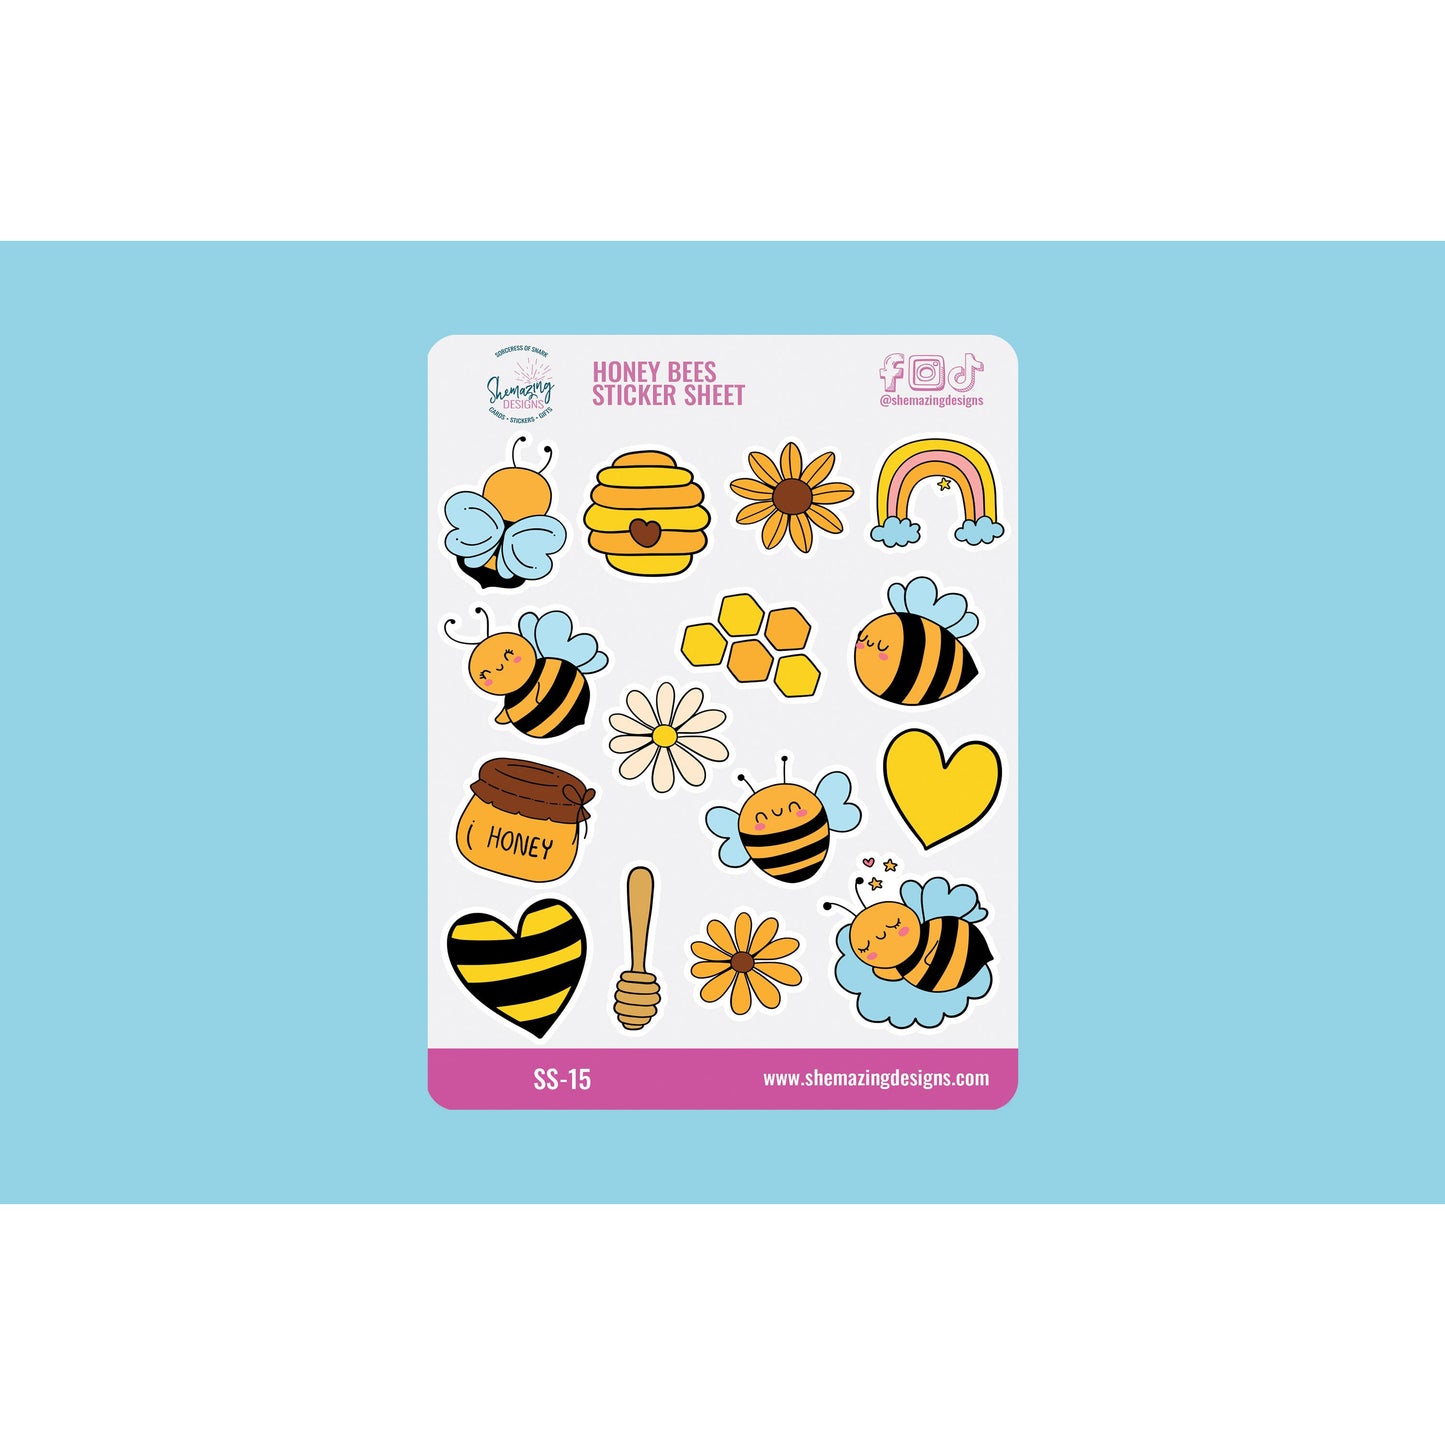 Honey Bees Sticker Sheet